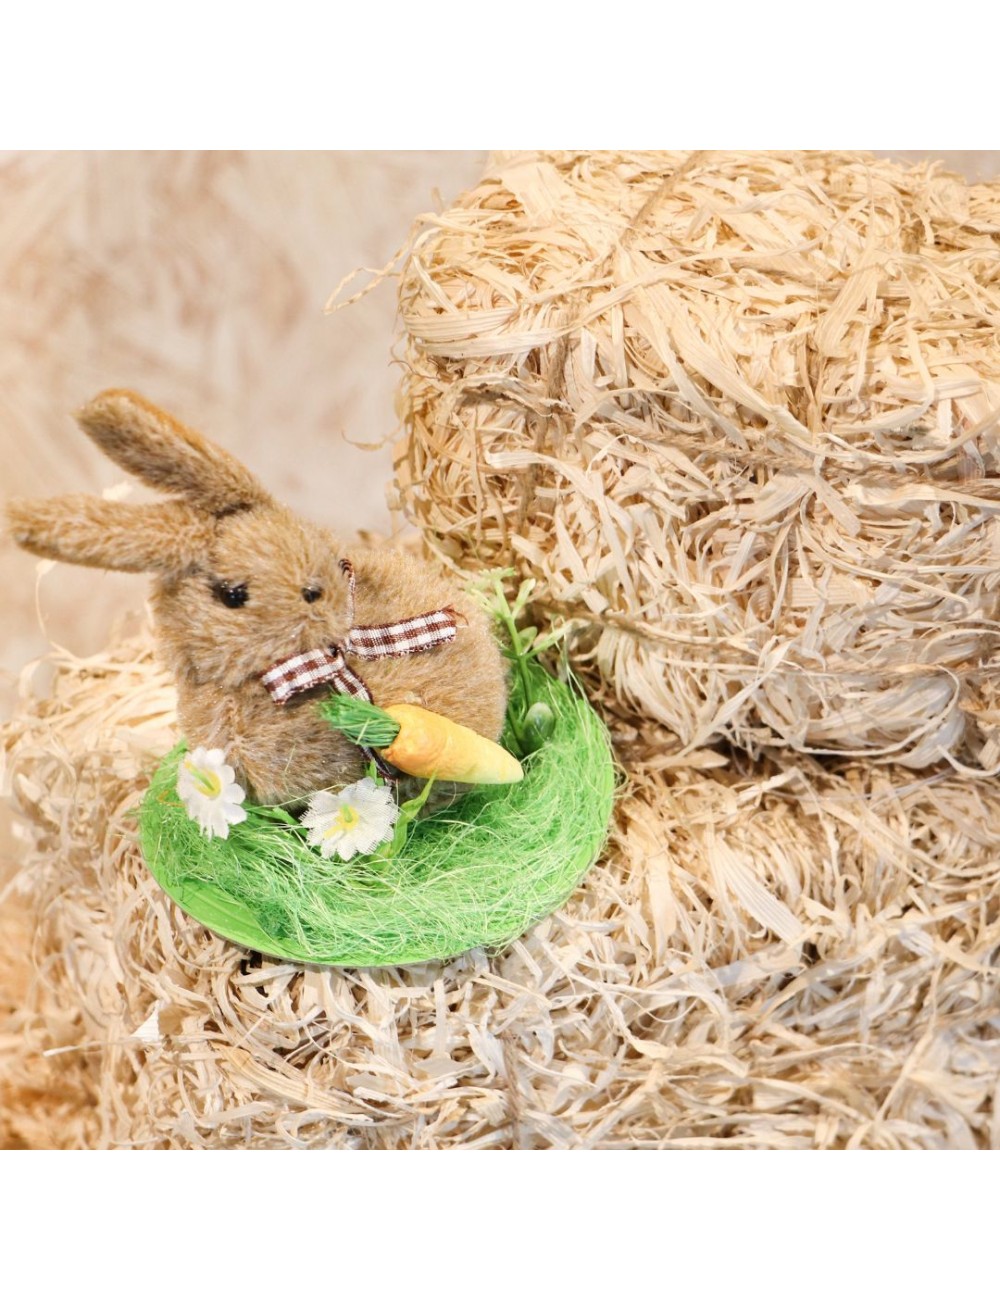 Gloss princesse lapine pour enfants